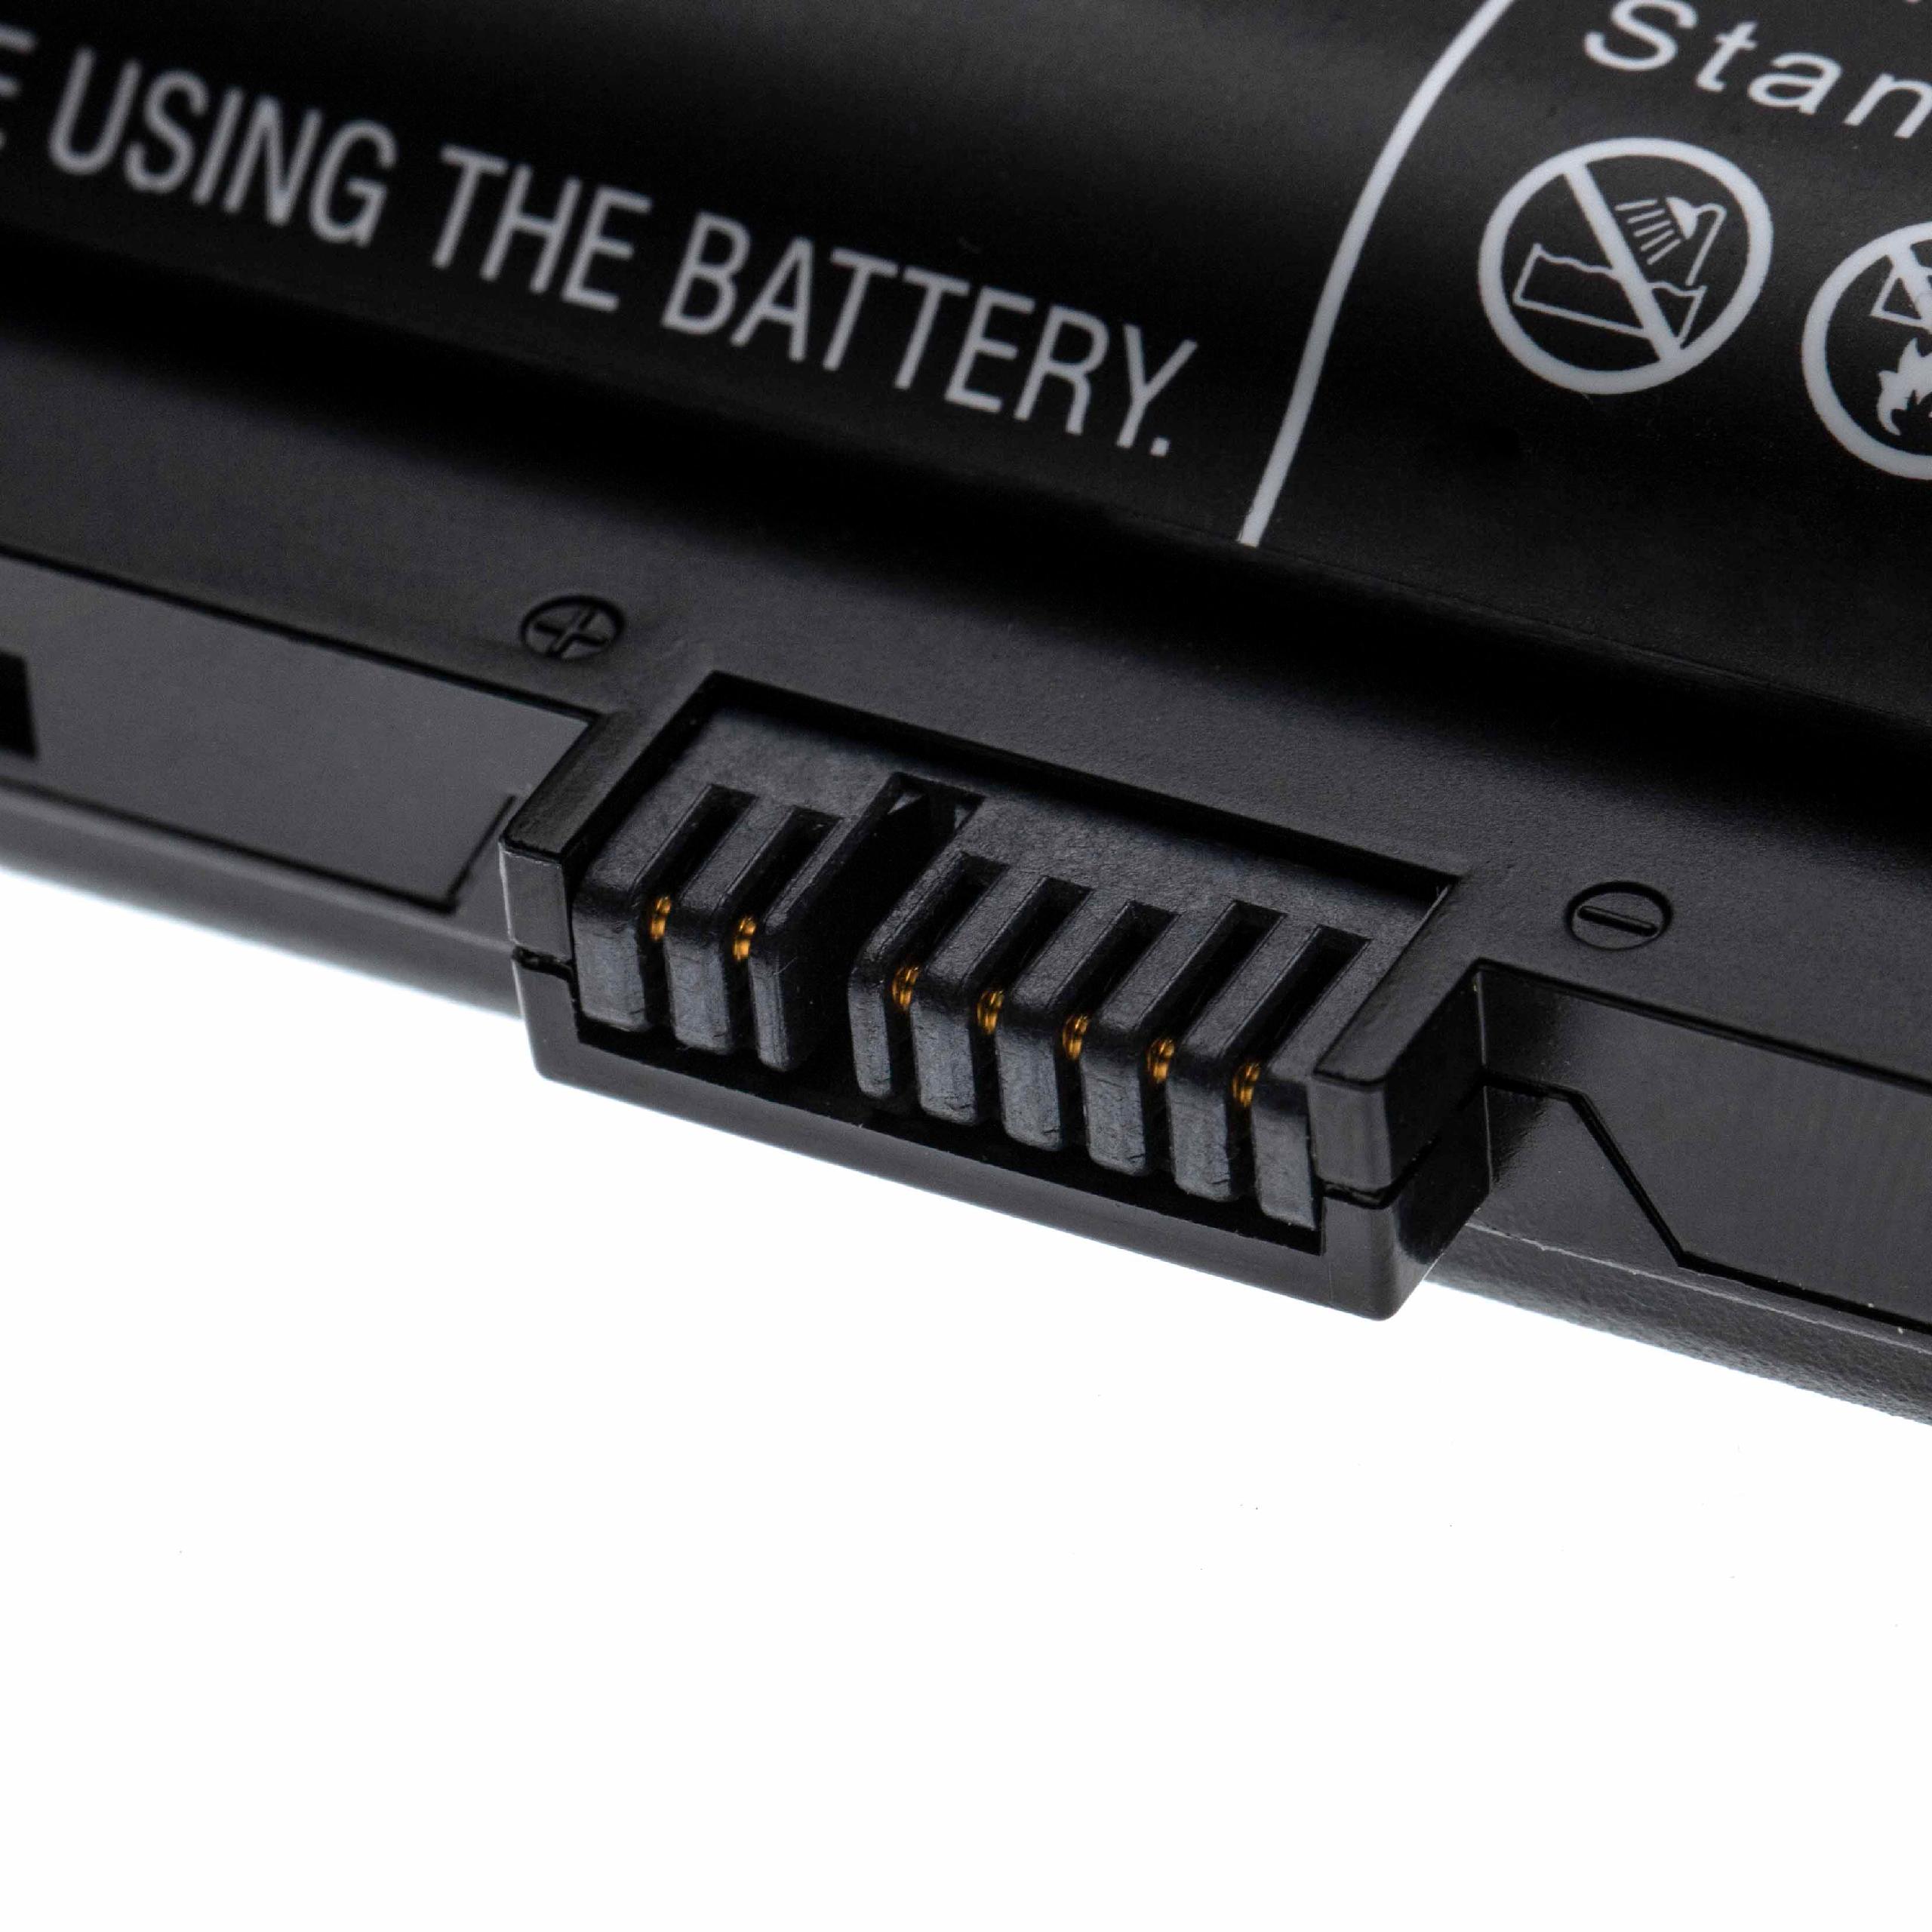 Notebook Battery Replacement for Lenovo FRU00NY486, 00NY489, 00NY488, 00NY486 - 4400mAh 10.8V Li-Ion, black